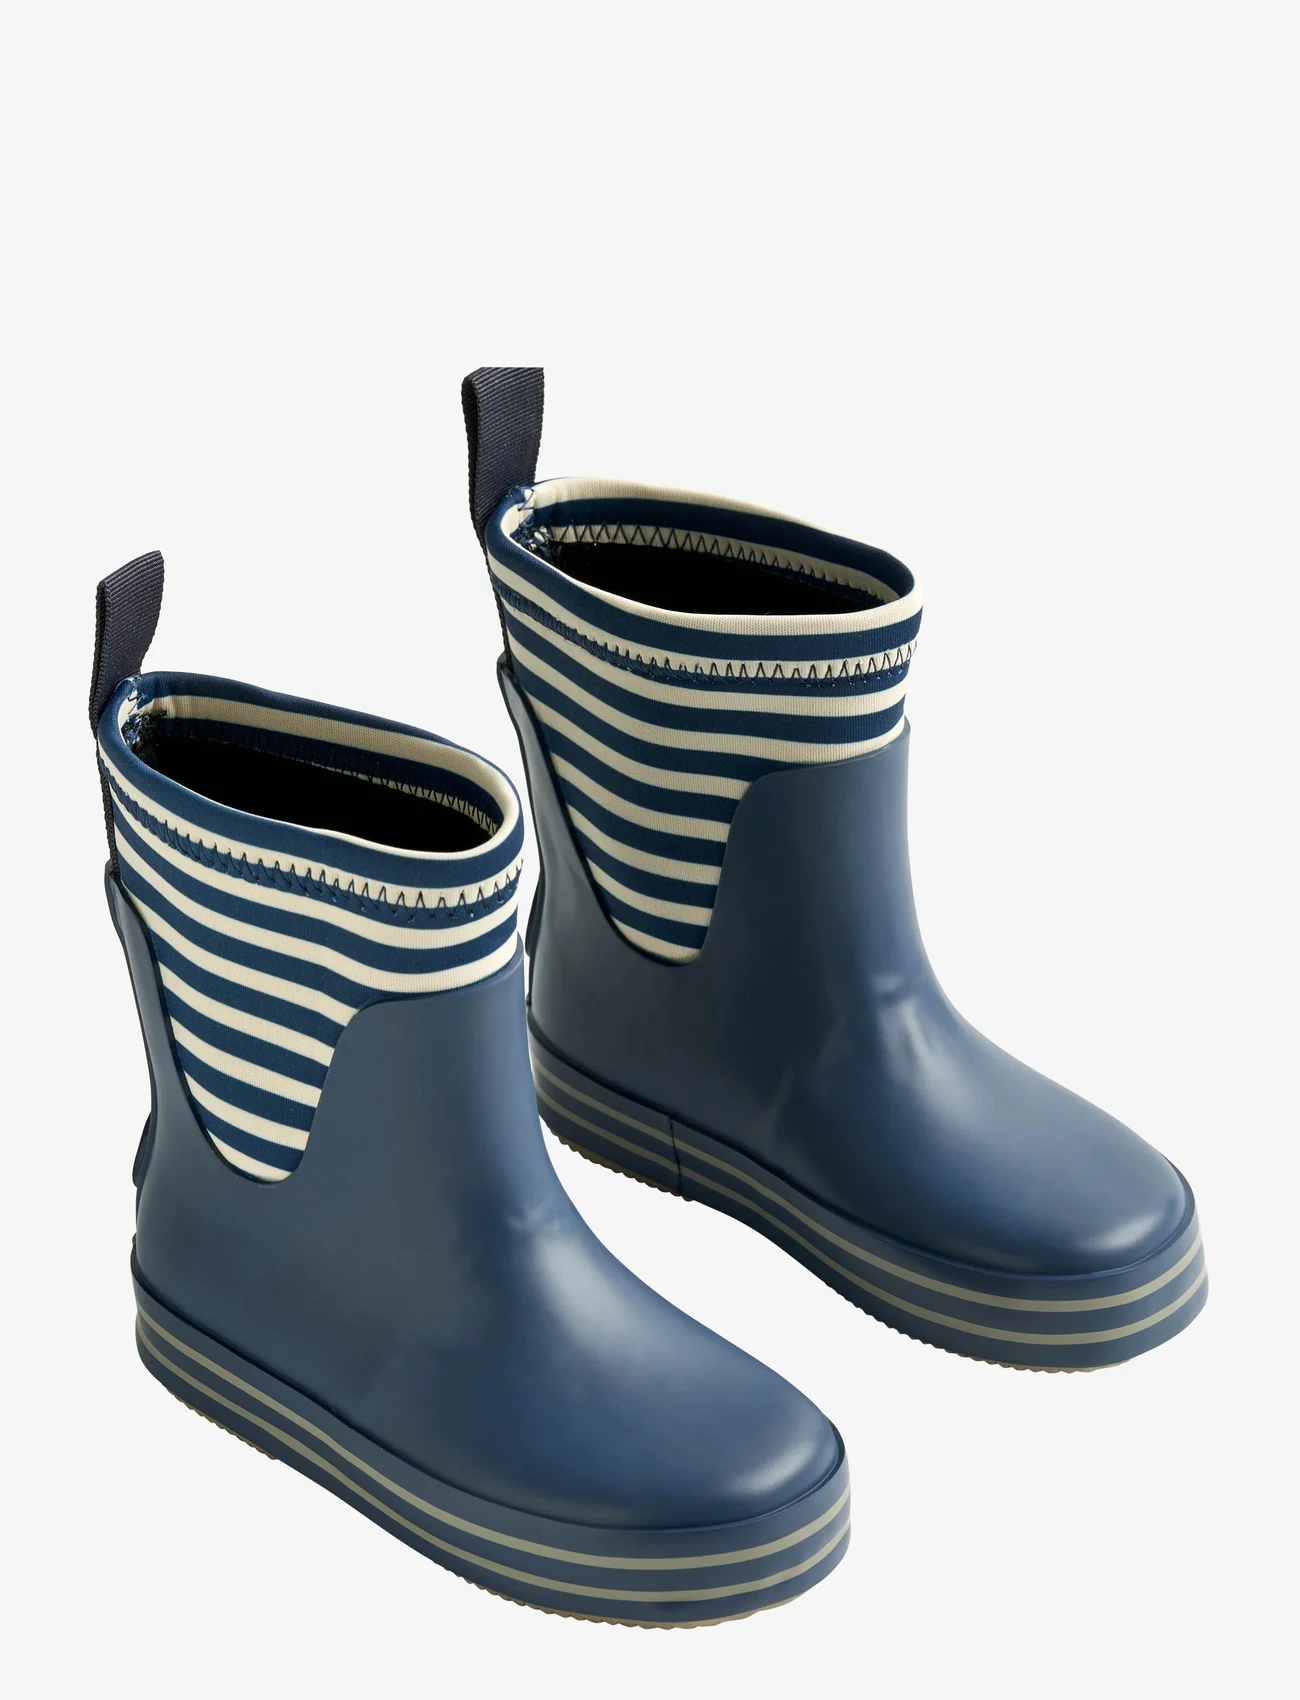 Wheat - Rubber Boot Print Mist - gummistøvler uten linjer - indigo stripe - 0